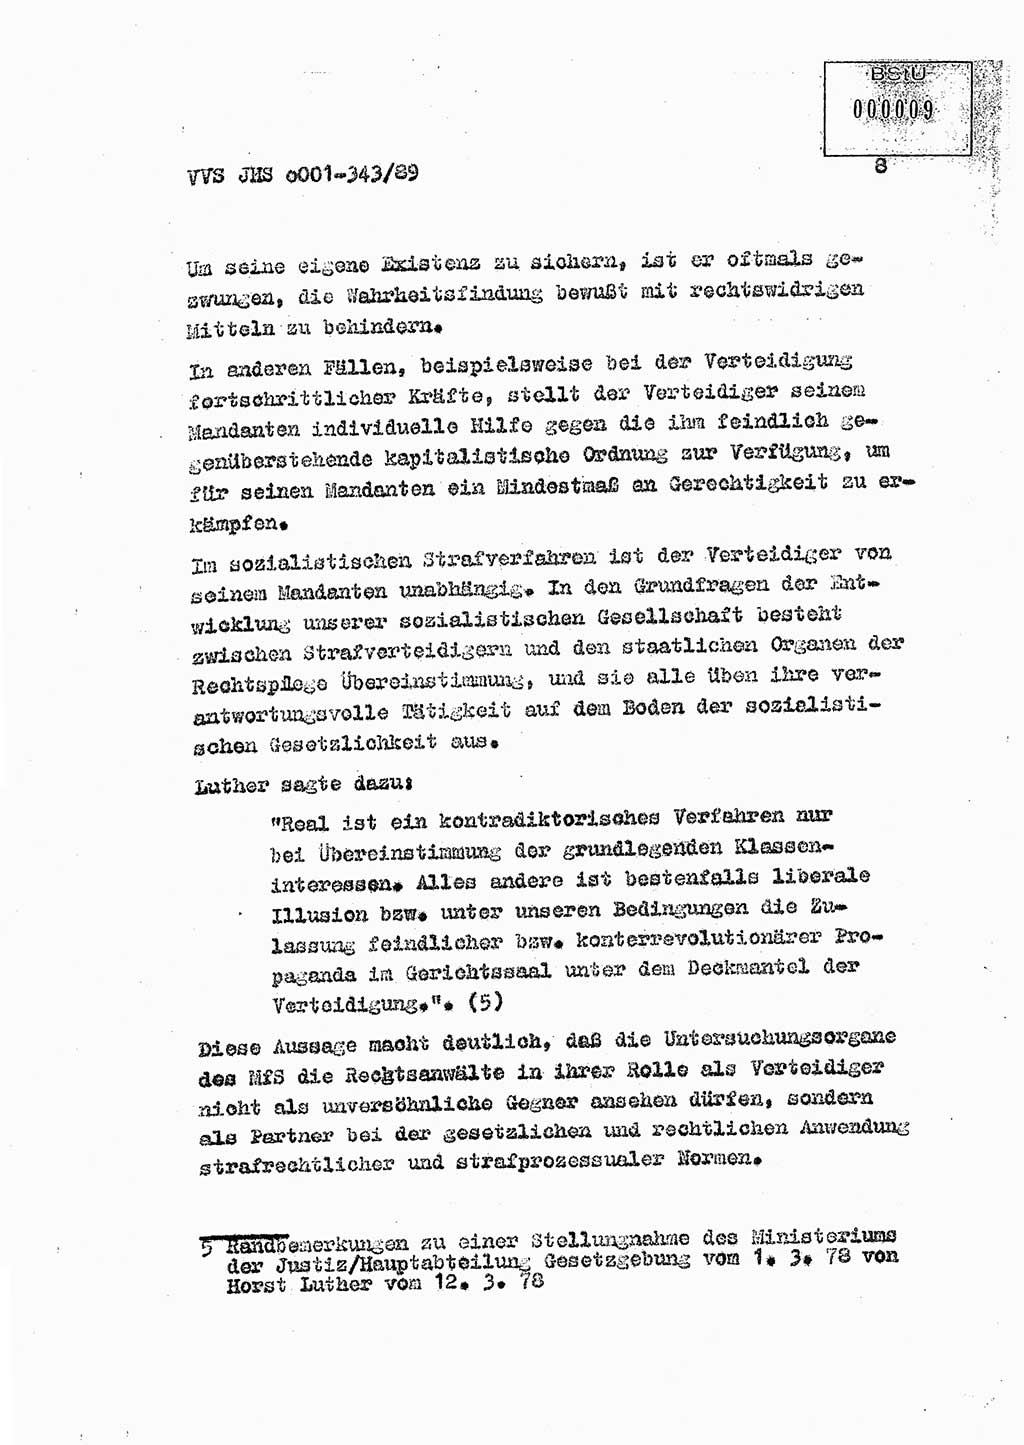 Diplomarbeit Offiziersschüler Axel Henschke (HA Ⅸ/9), Ministerium für Staatssicherheit (MfS) [Deutsche Demokratische Republik (DDR)], Juristische Hochschule (JHS), Vertrauliche Verschlußsache (VVS) o001-343/89, Potsdam 1989, Seite 8 (Dipl.-Arb. MfS DDR JHS VVS o001-343/89 1989, S. 8)